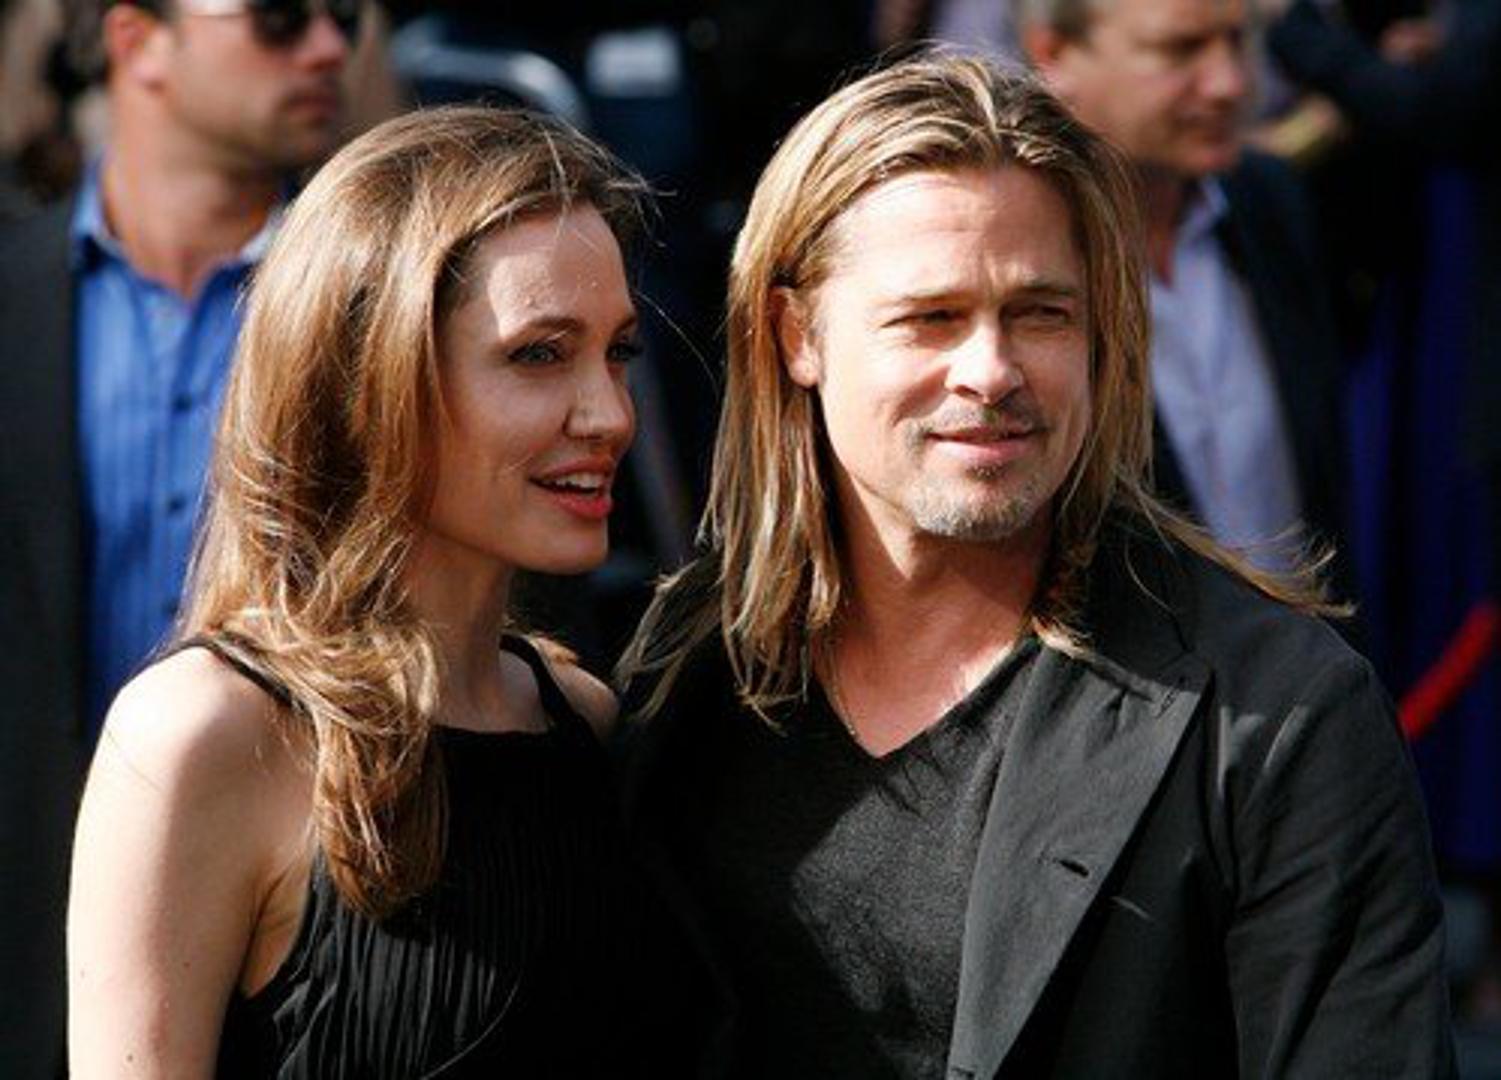 Nakon što se rastao od Angelina Jolie, obožavateljice Brada Pitta nisu skrivale oduševljenje što je jedan od najzgodnijih muškaraca Hollywooda opet solo.